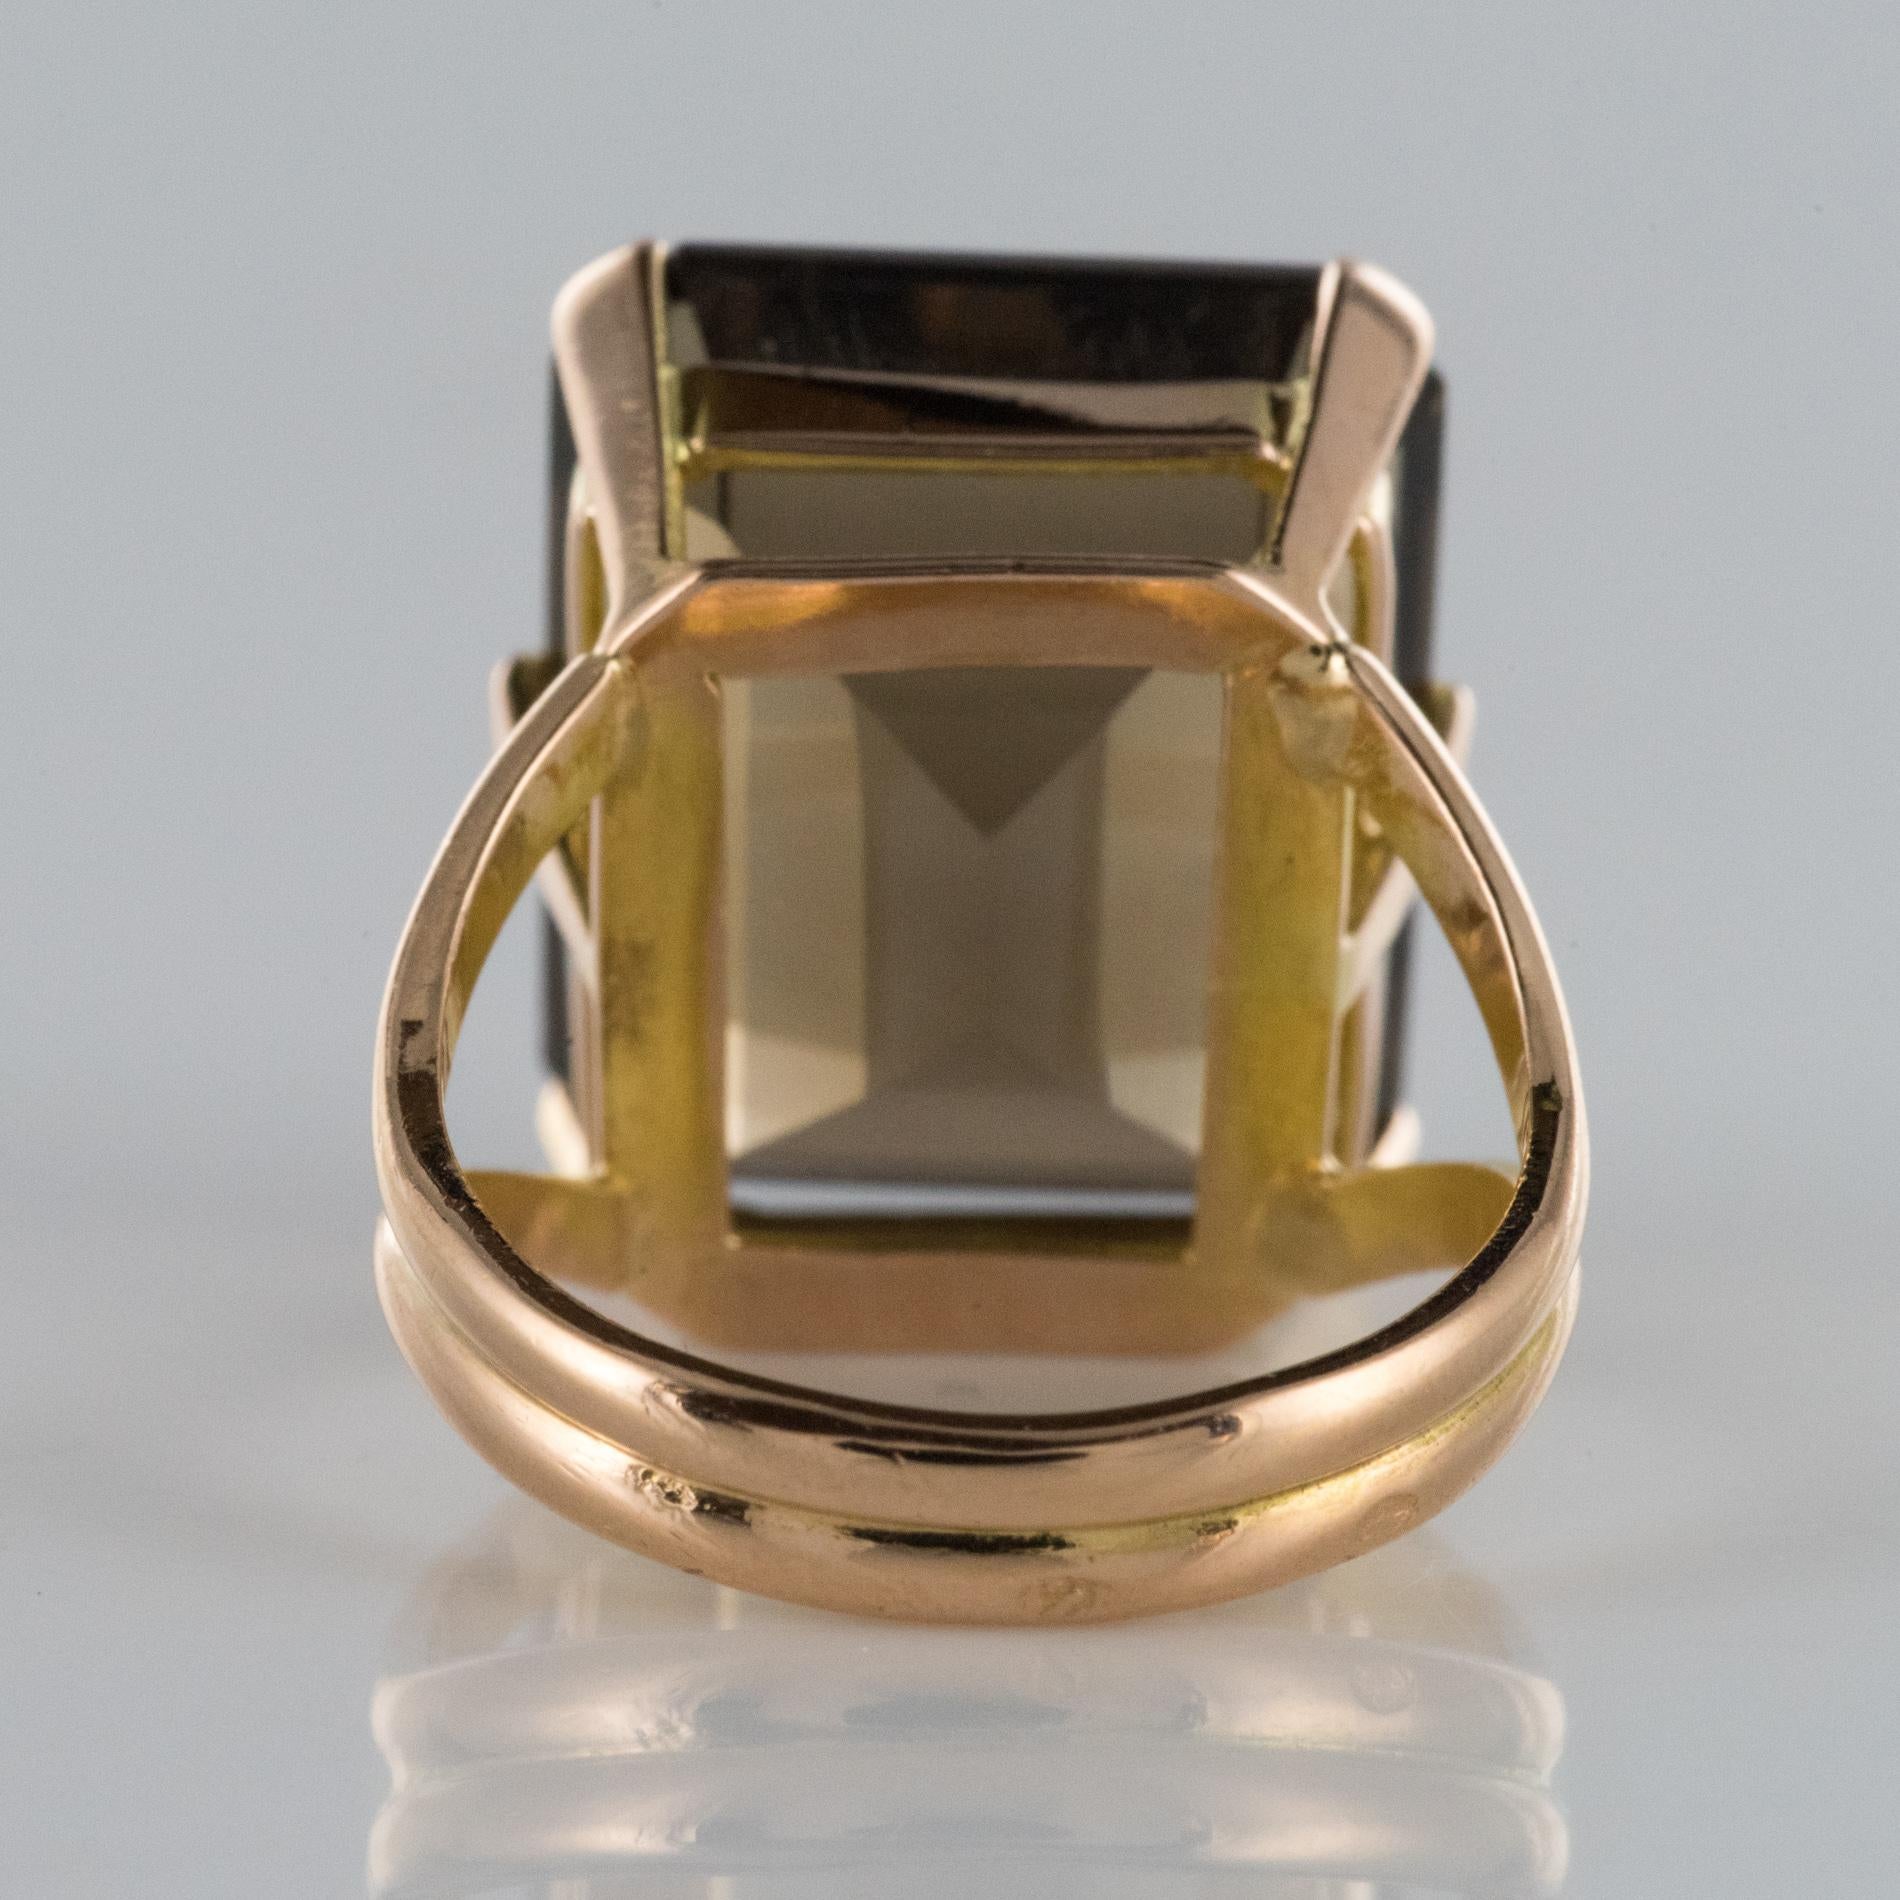 Emerald Cut 1960s Retro Smoky Quartz 18 Karat Yellow Gold Ring